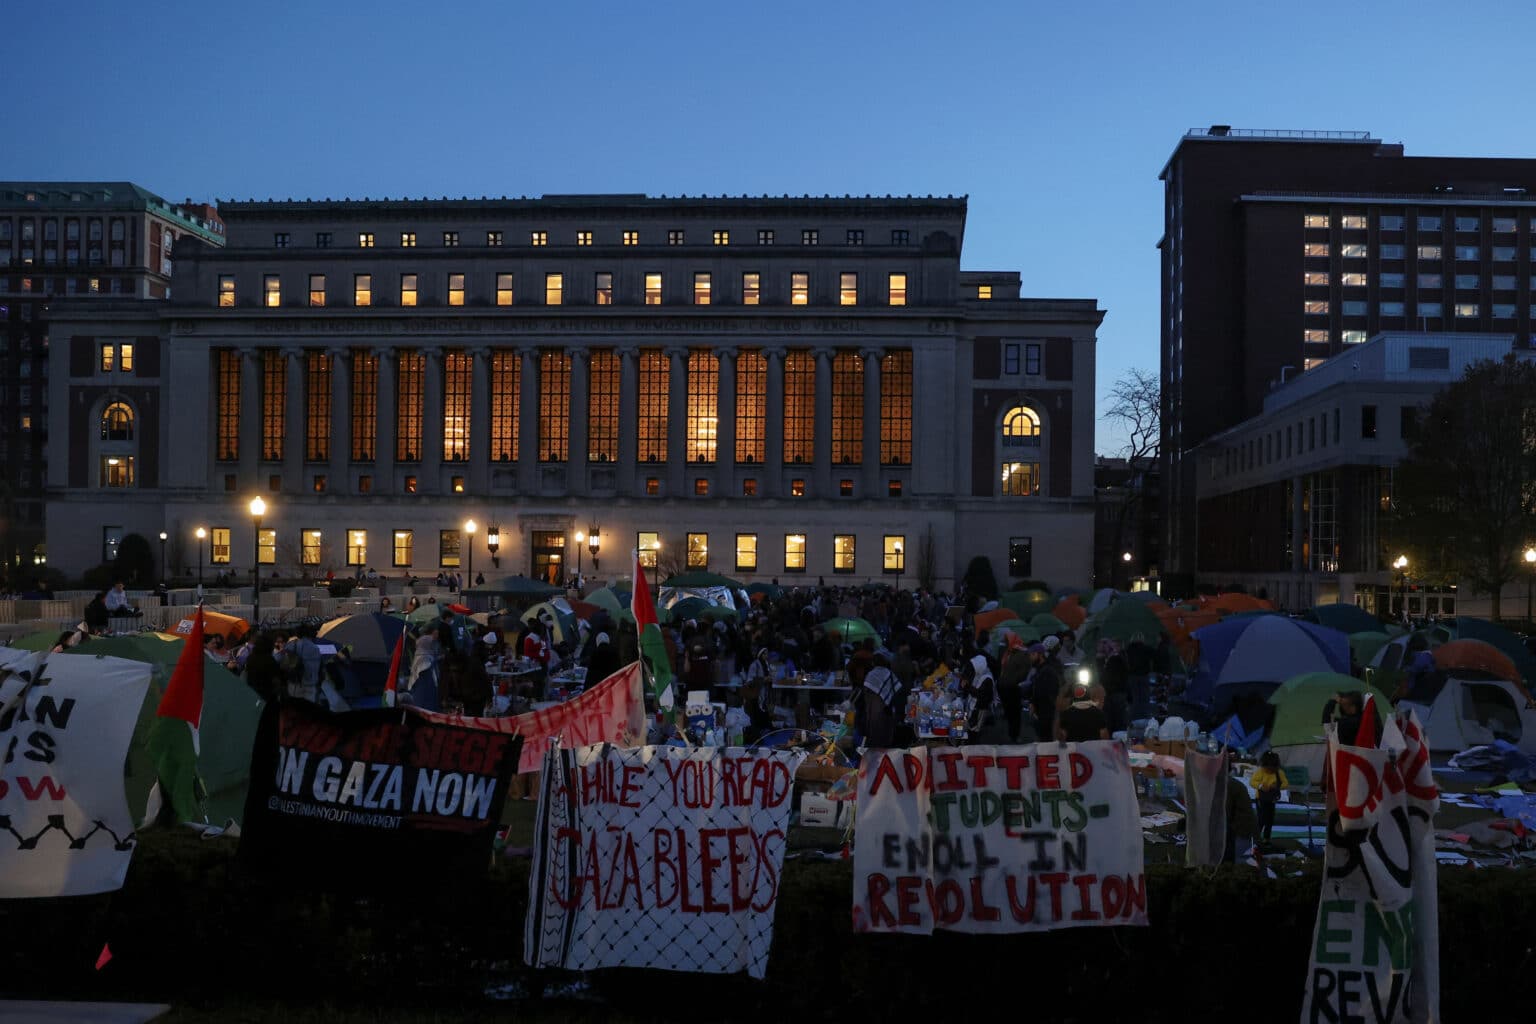 האולטימטום חלף – והמפגינים באוניברסיטת קולומביה מסרבים להתפנות